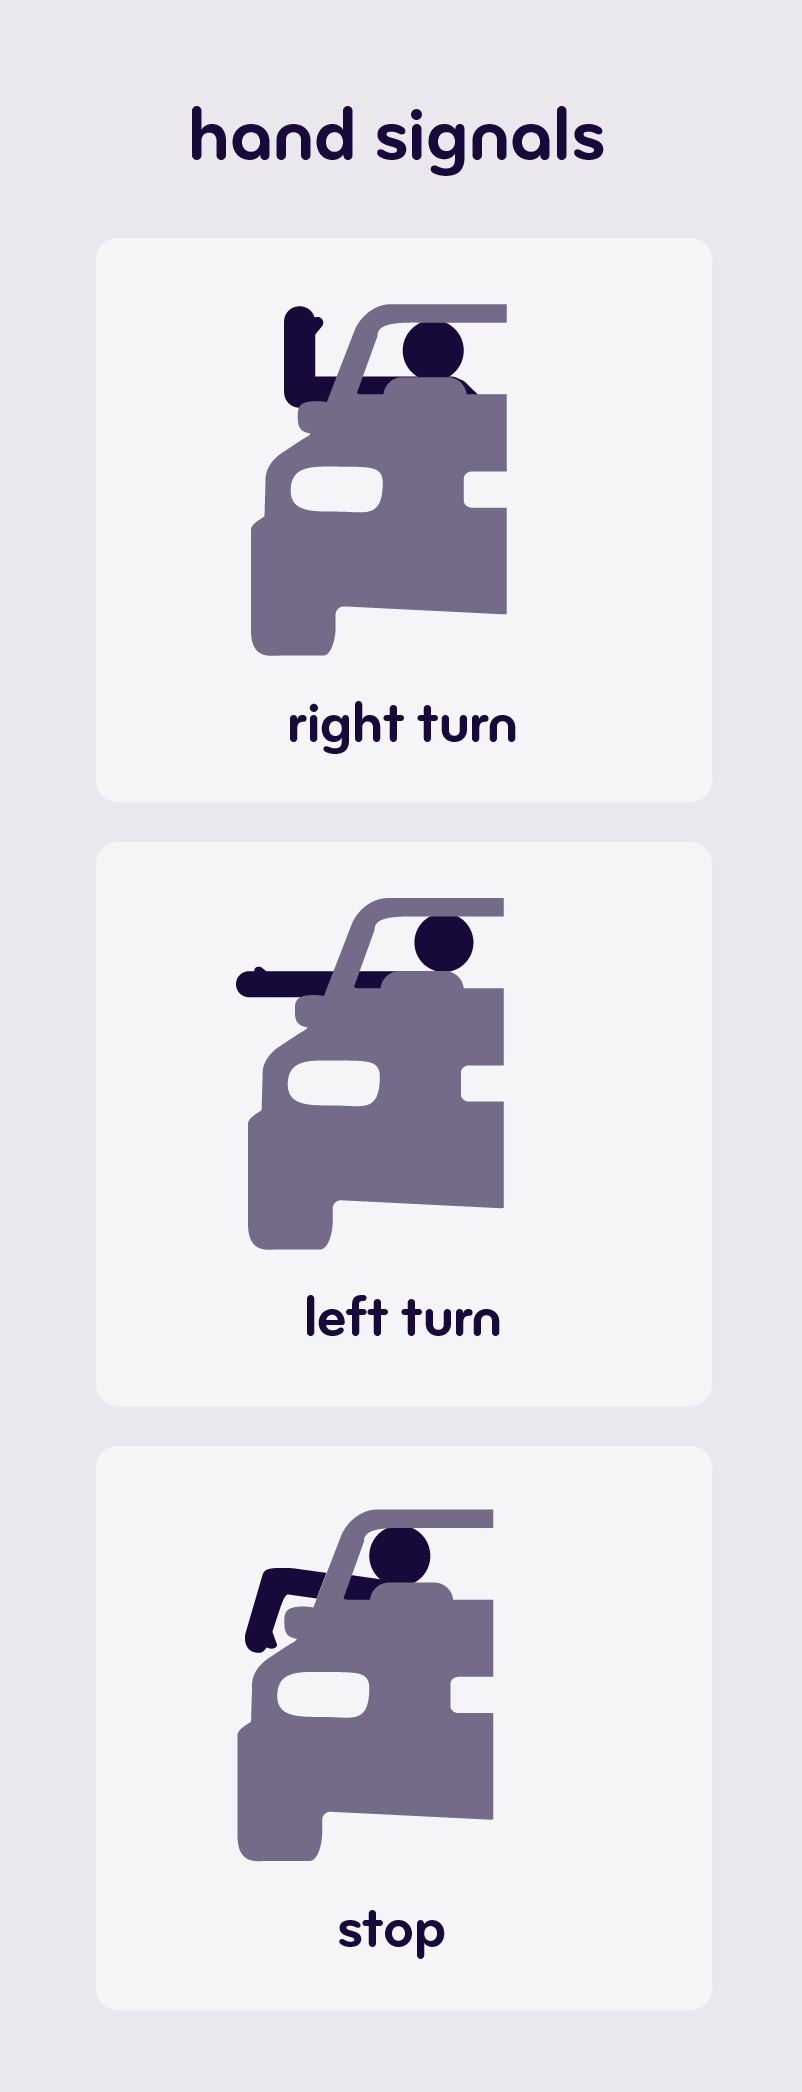 Driver Arm Signals